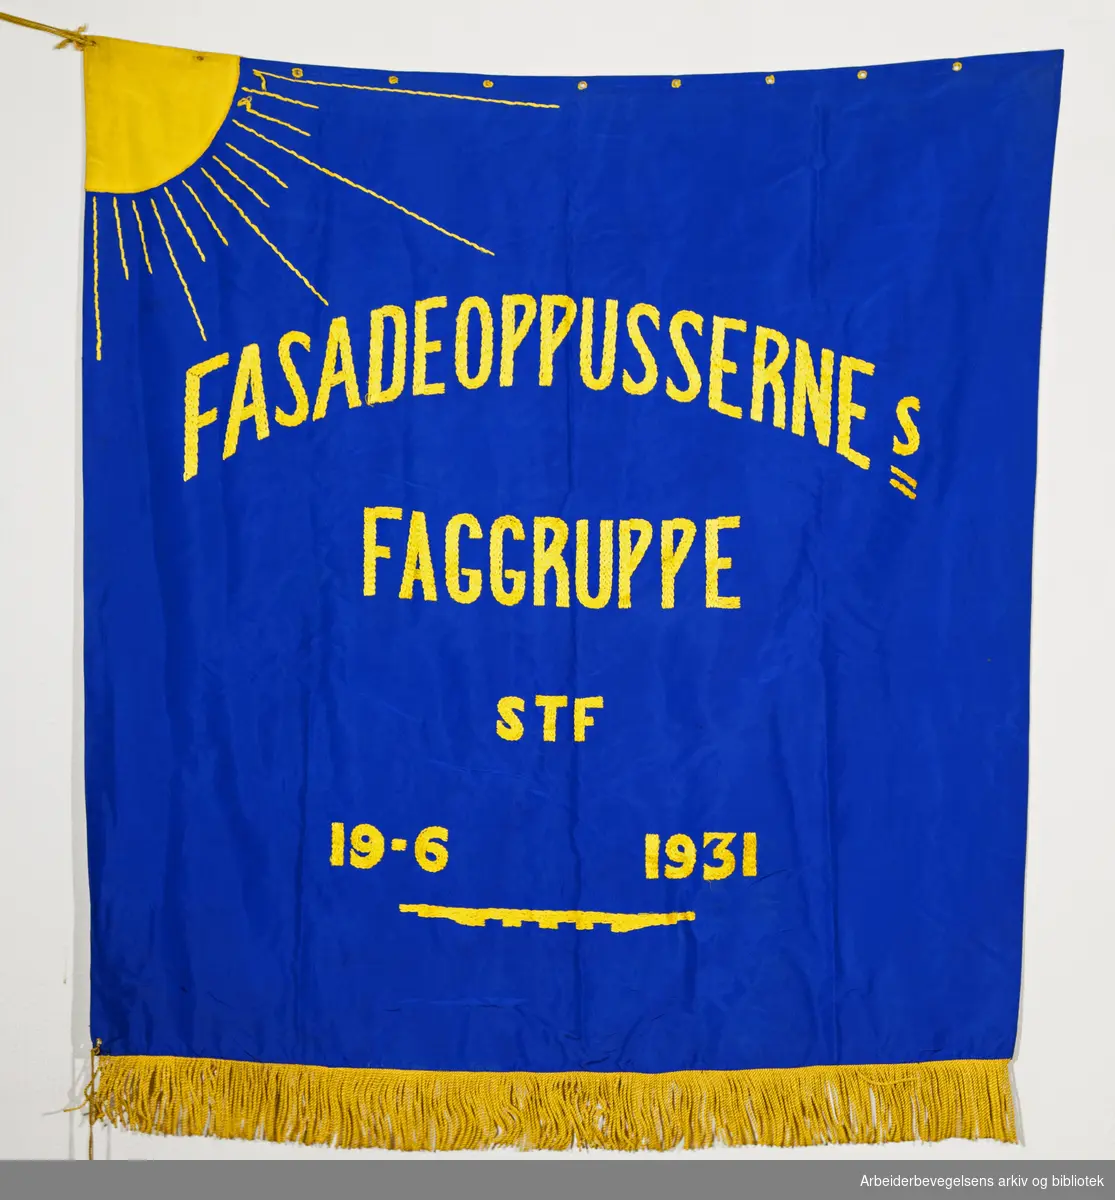 Fasadeoppussernes Faggruppe (Forside). Fanetekst: Fasadeoppussernes Faggruppe STF 19. 6. 1931